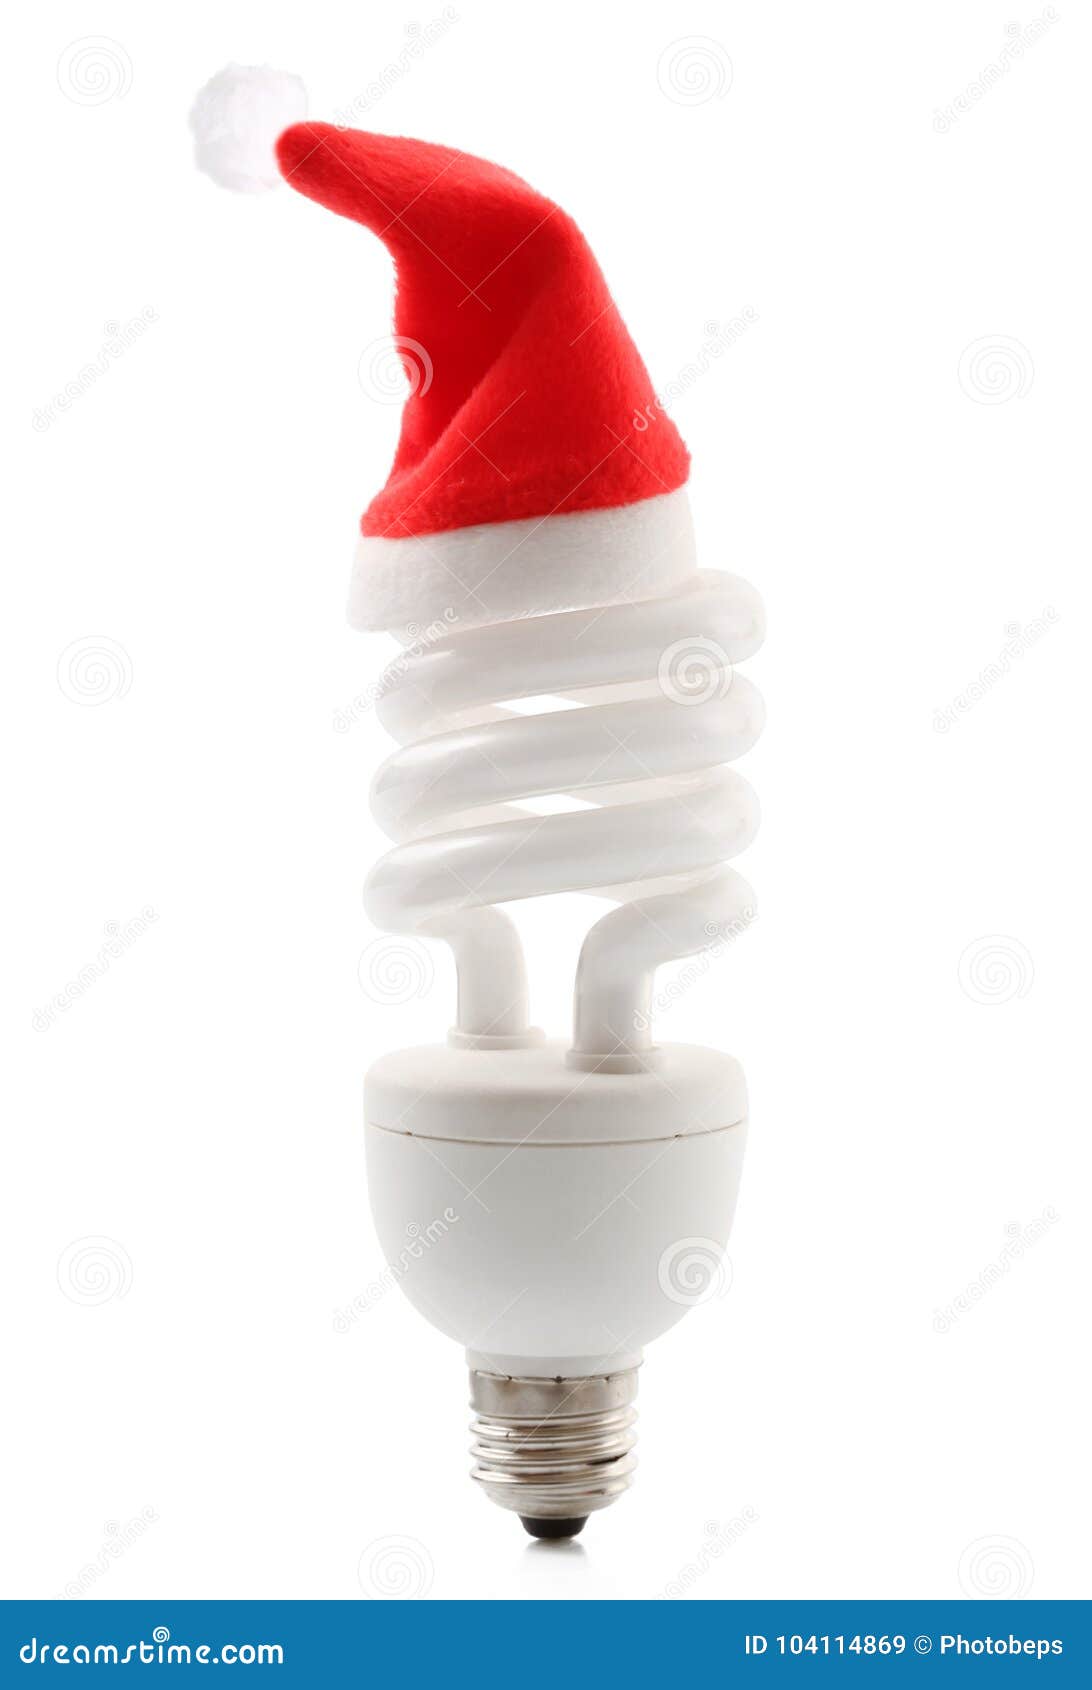 Xmas Hat Light Bulb on White Background Stock Image - Image of santa ...